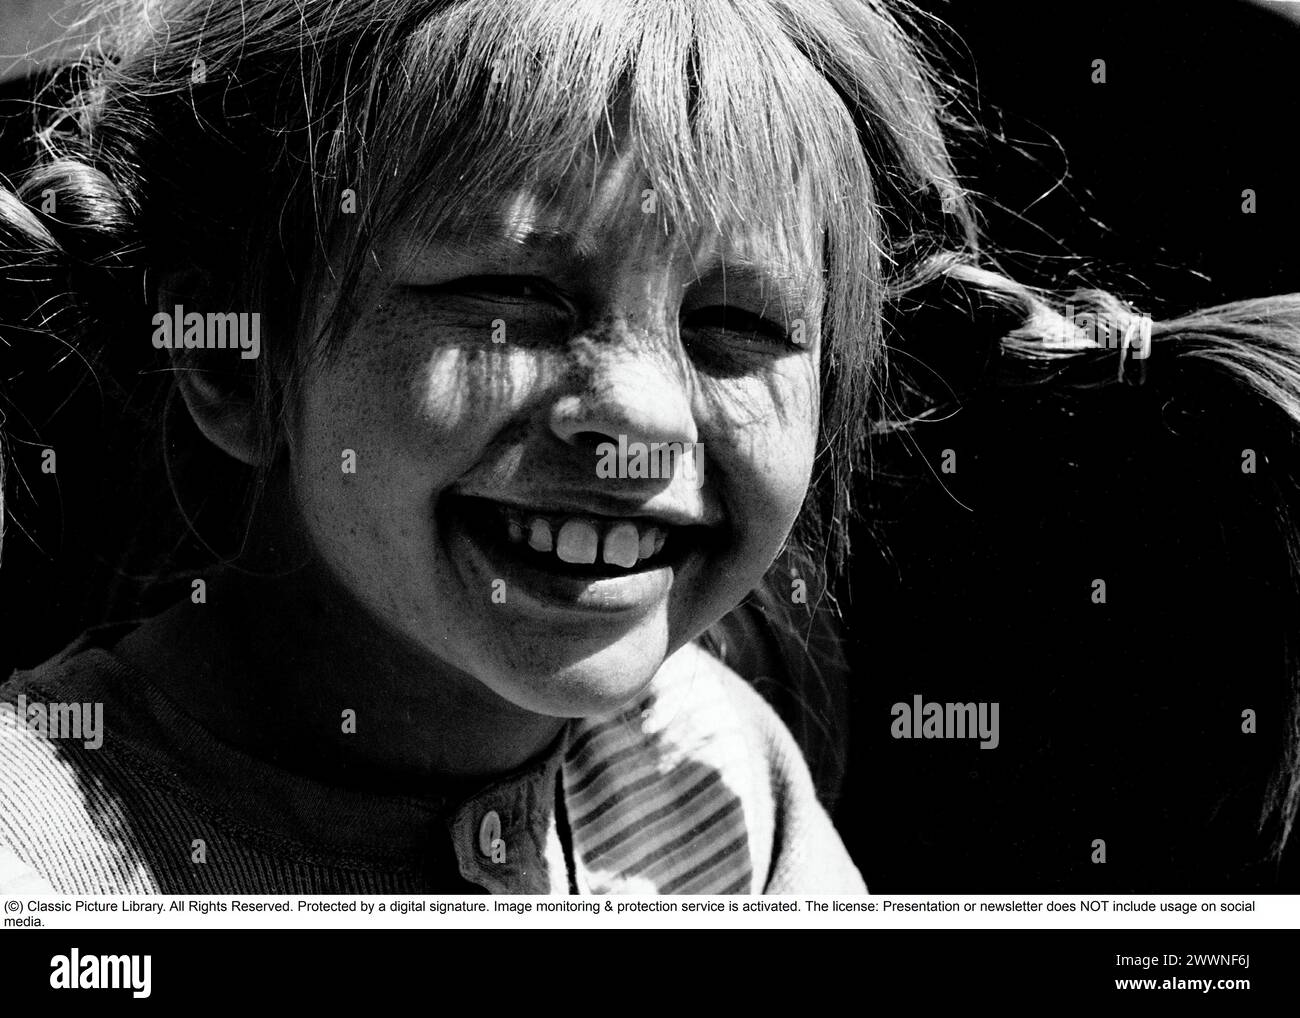 Inger Nilsson. Né en 1959. Enfant actrice suédoise connue pour jouer le rôle de Pippi Longstocking dans la série télévisée et les films basés sur le personnage de l'auteur Astrid Lindgren. Photographié sur le plateau du film Pippi Långstrump 1969. *** Légende locale *** Banque D'Images